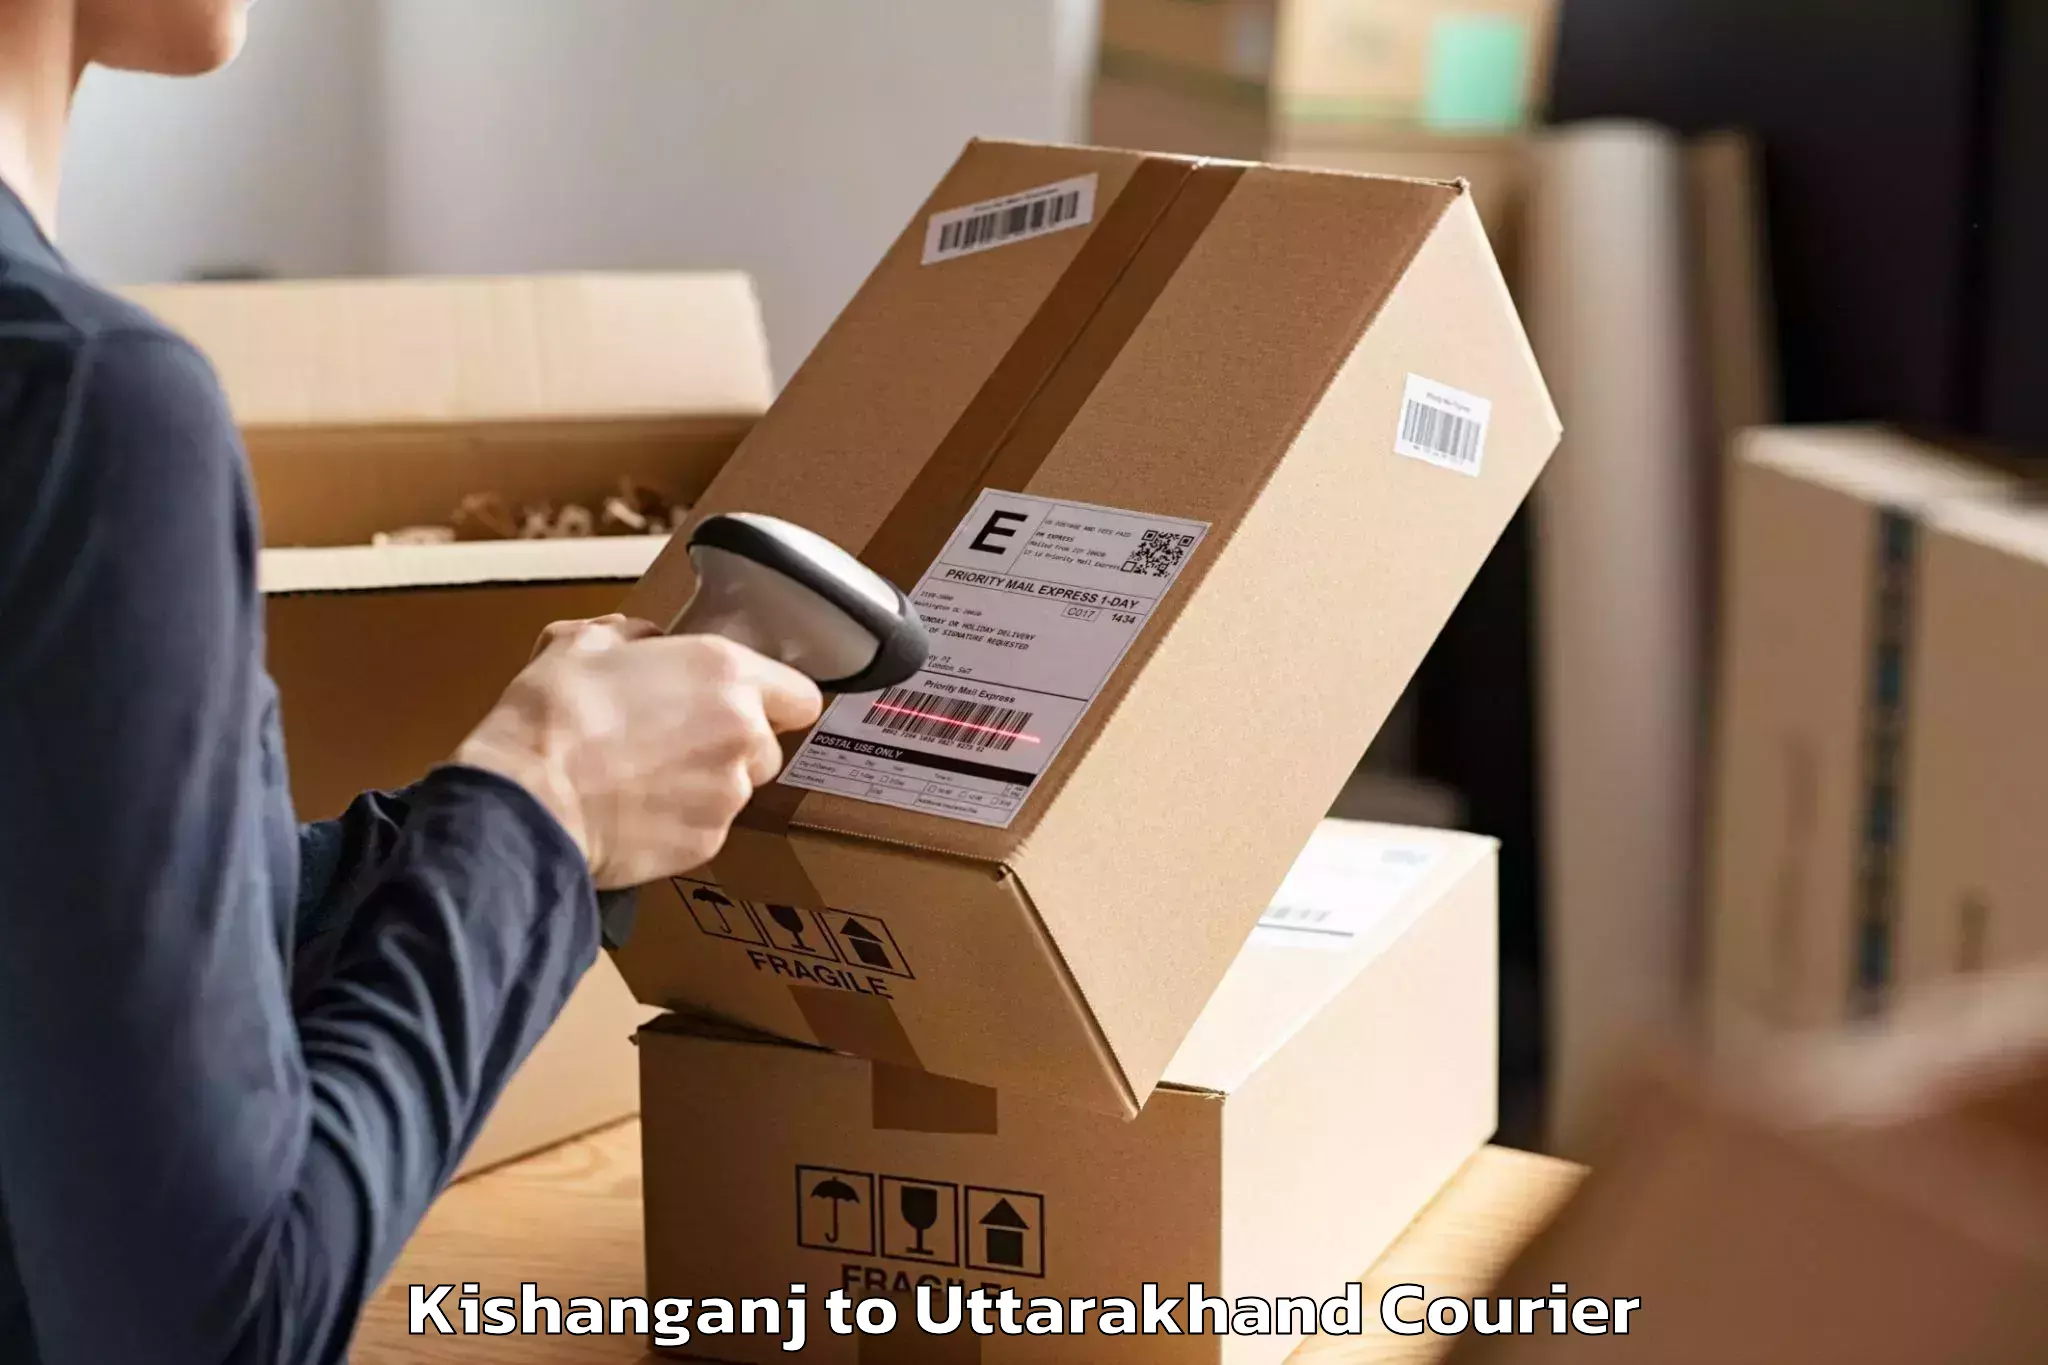 Furniture transport company Kishanganj to Kashipur